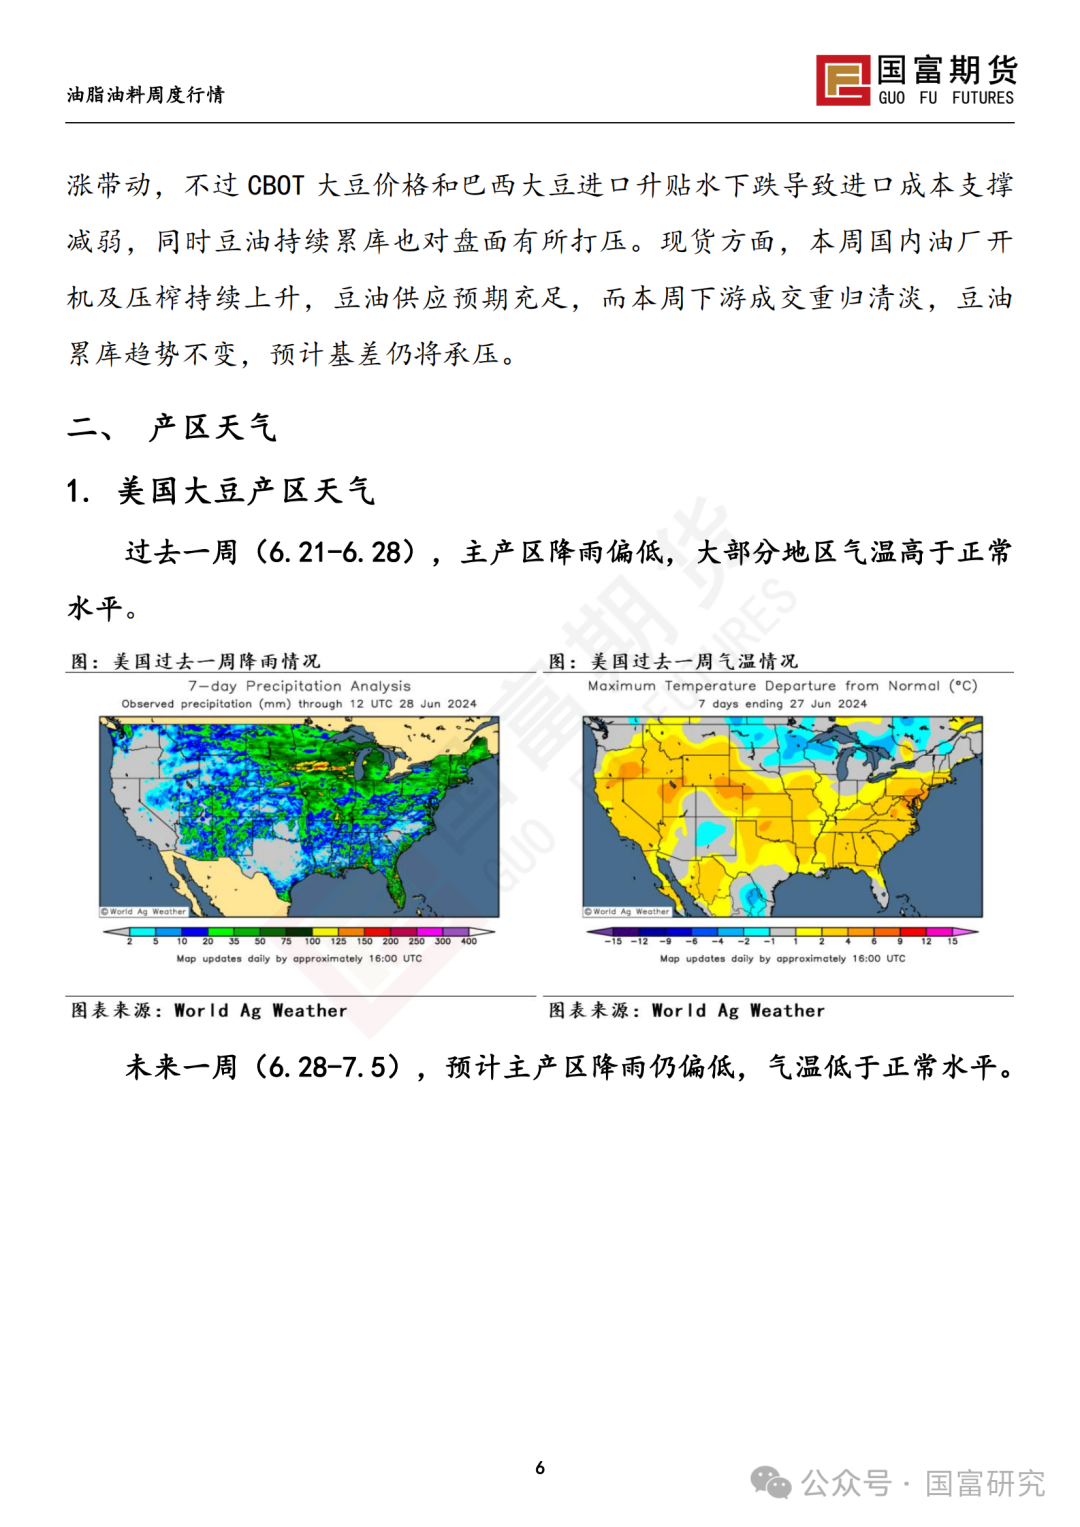 【国富豆系研究周报】USDA双报告中性略多，市场等待天气驱动 20240701  第8张